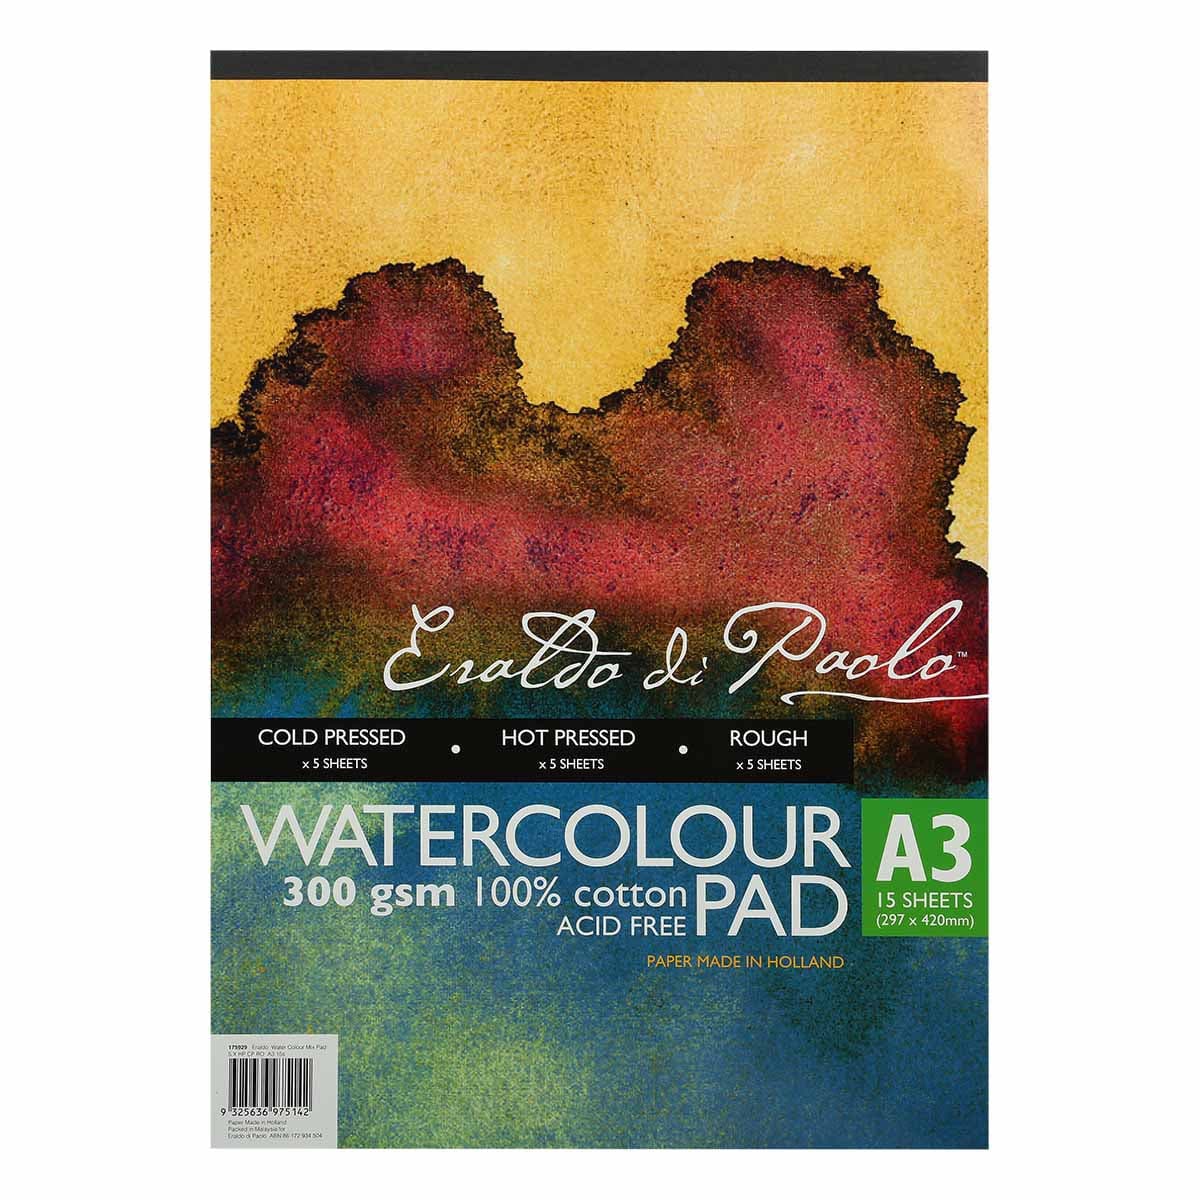 Image of Eraldo Di Paolo A3 300gsm Watercolour Mix Pad 15 Sheets